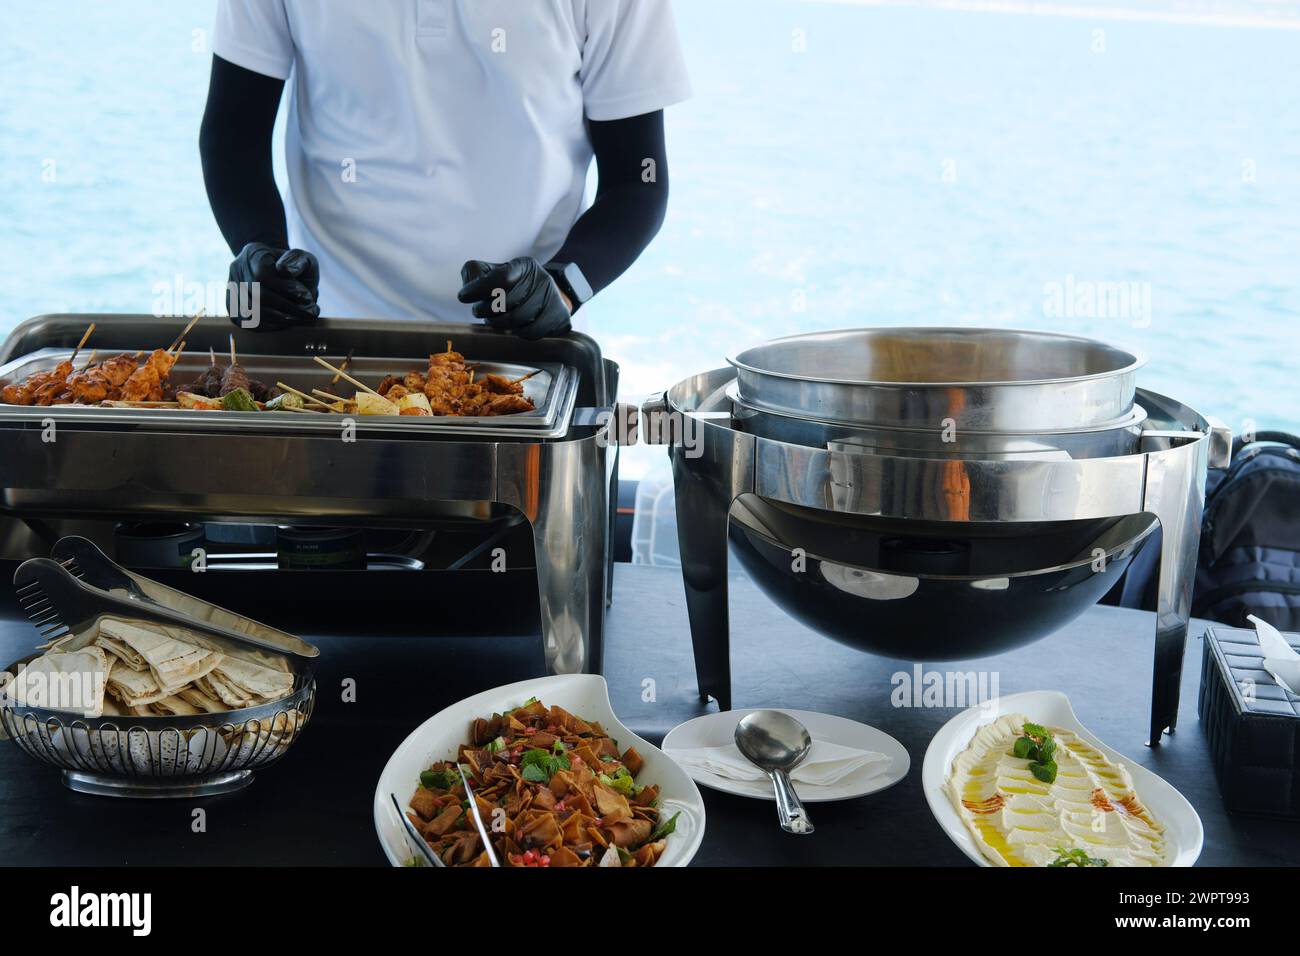 Ein Service-Mitarbeiter auf einer Yacht arrangiert eine Mahlzeit mit einer Auswahl an Gerichten für die Gäste vor dem Hintergrund des Meeres Stockfoto